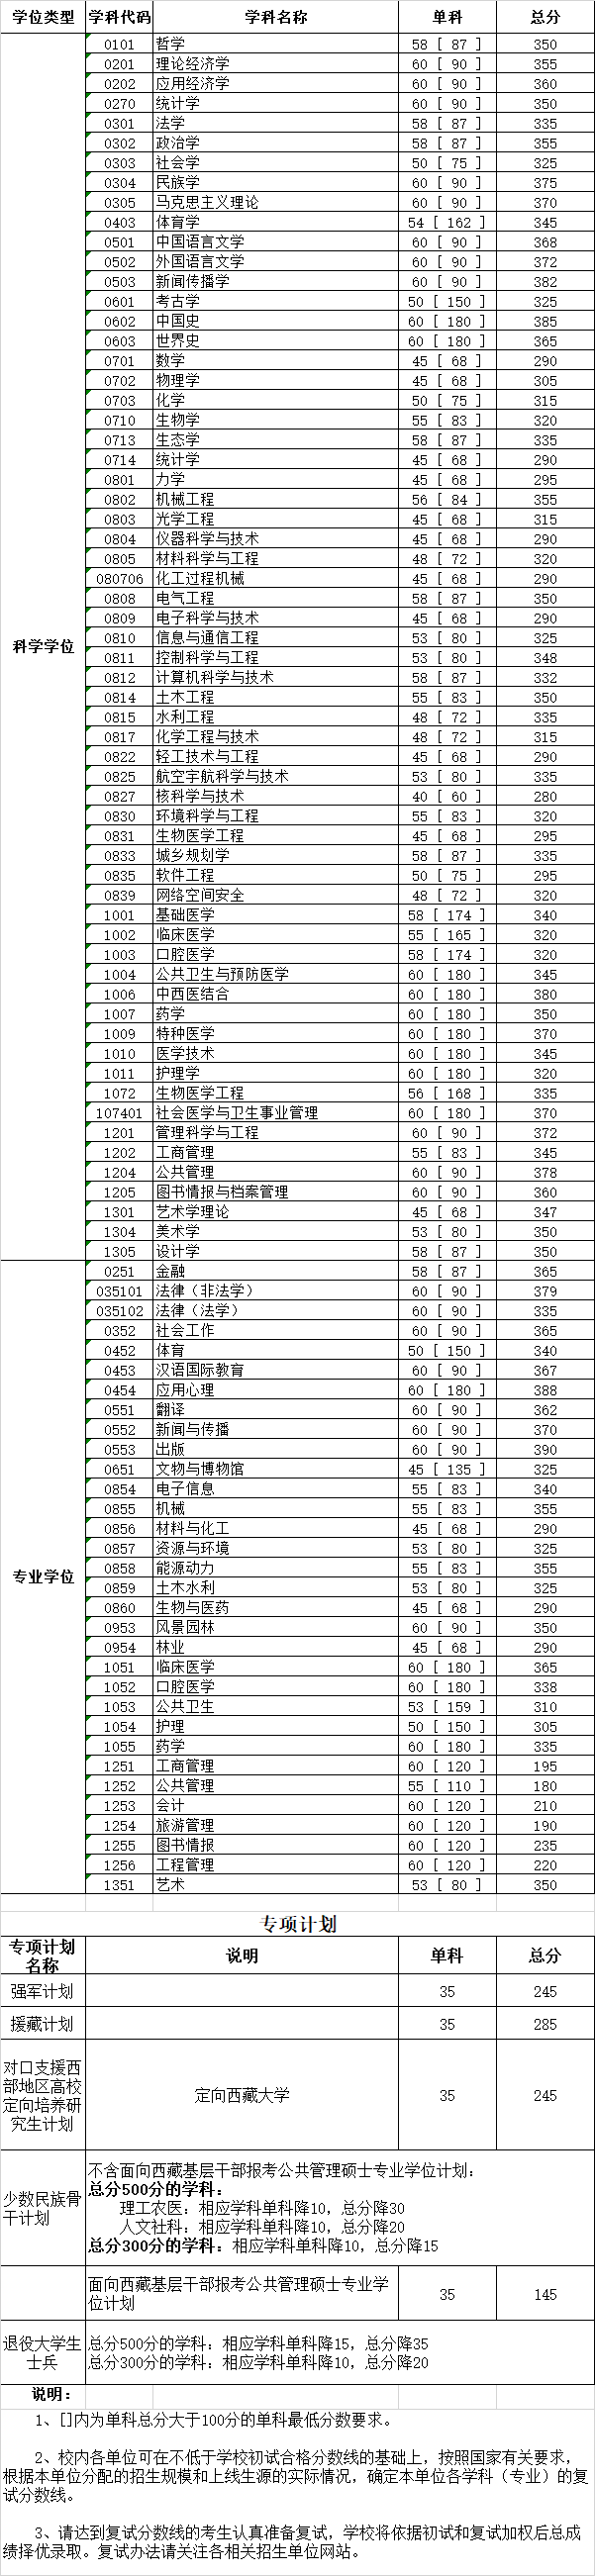 四川大学2020年硕士研究生入学考试复试分数线